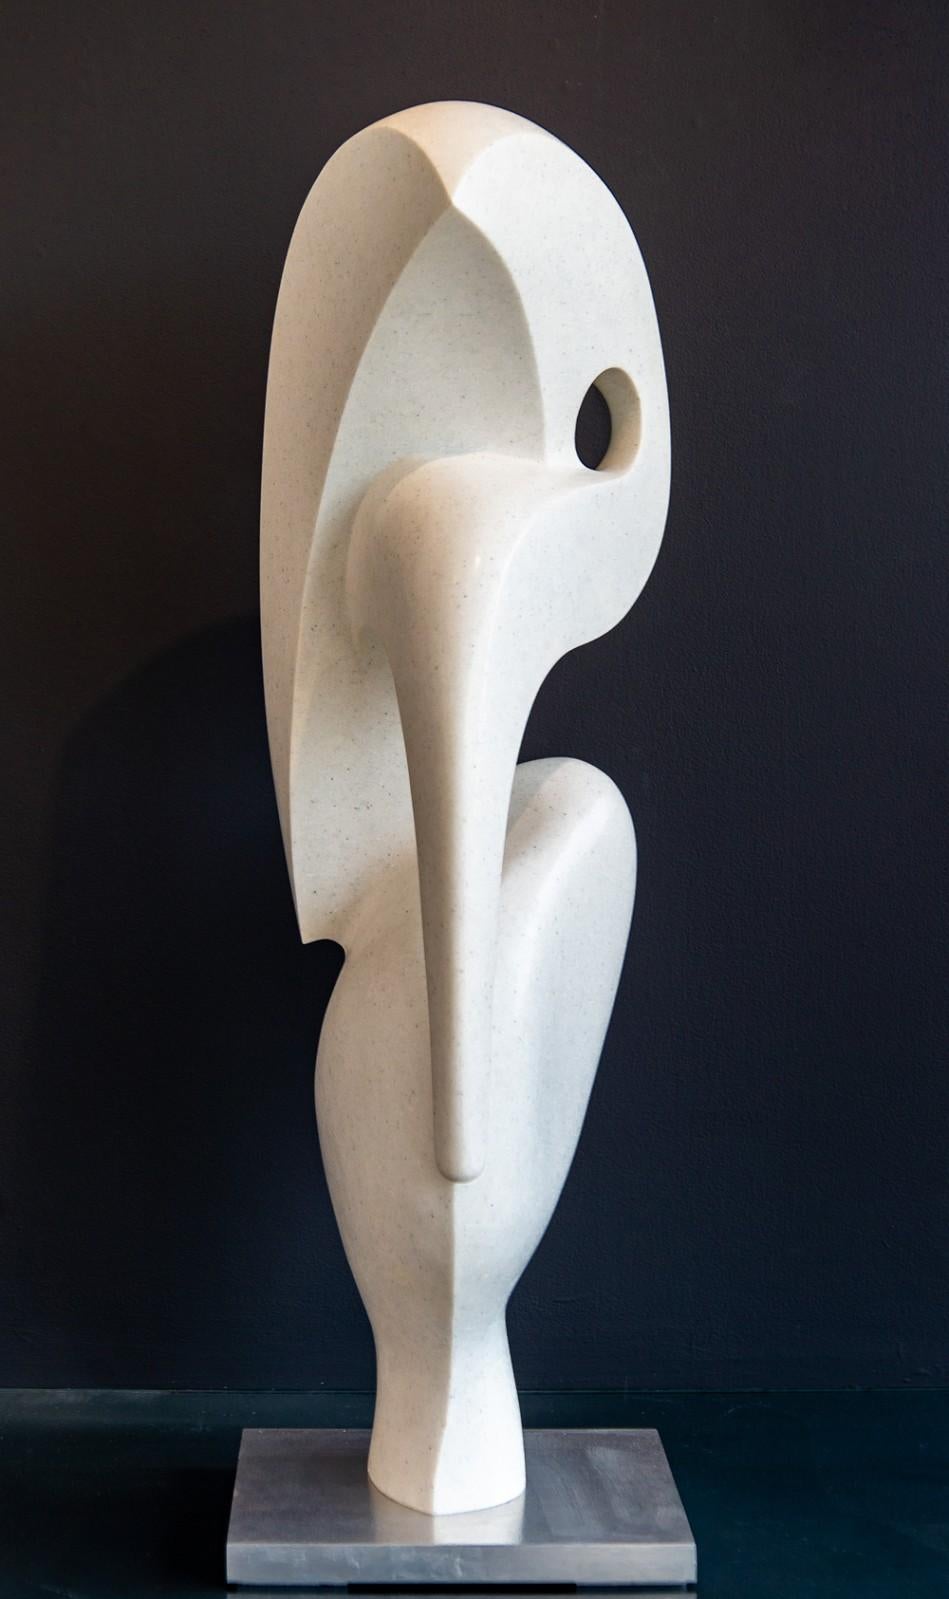 Jeremy Guy Abstract Sculpture – Heron 5/50 - glatte, polierte, abstrahierte figurative Skulptur aus weißem Marmor